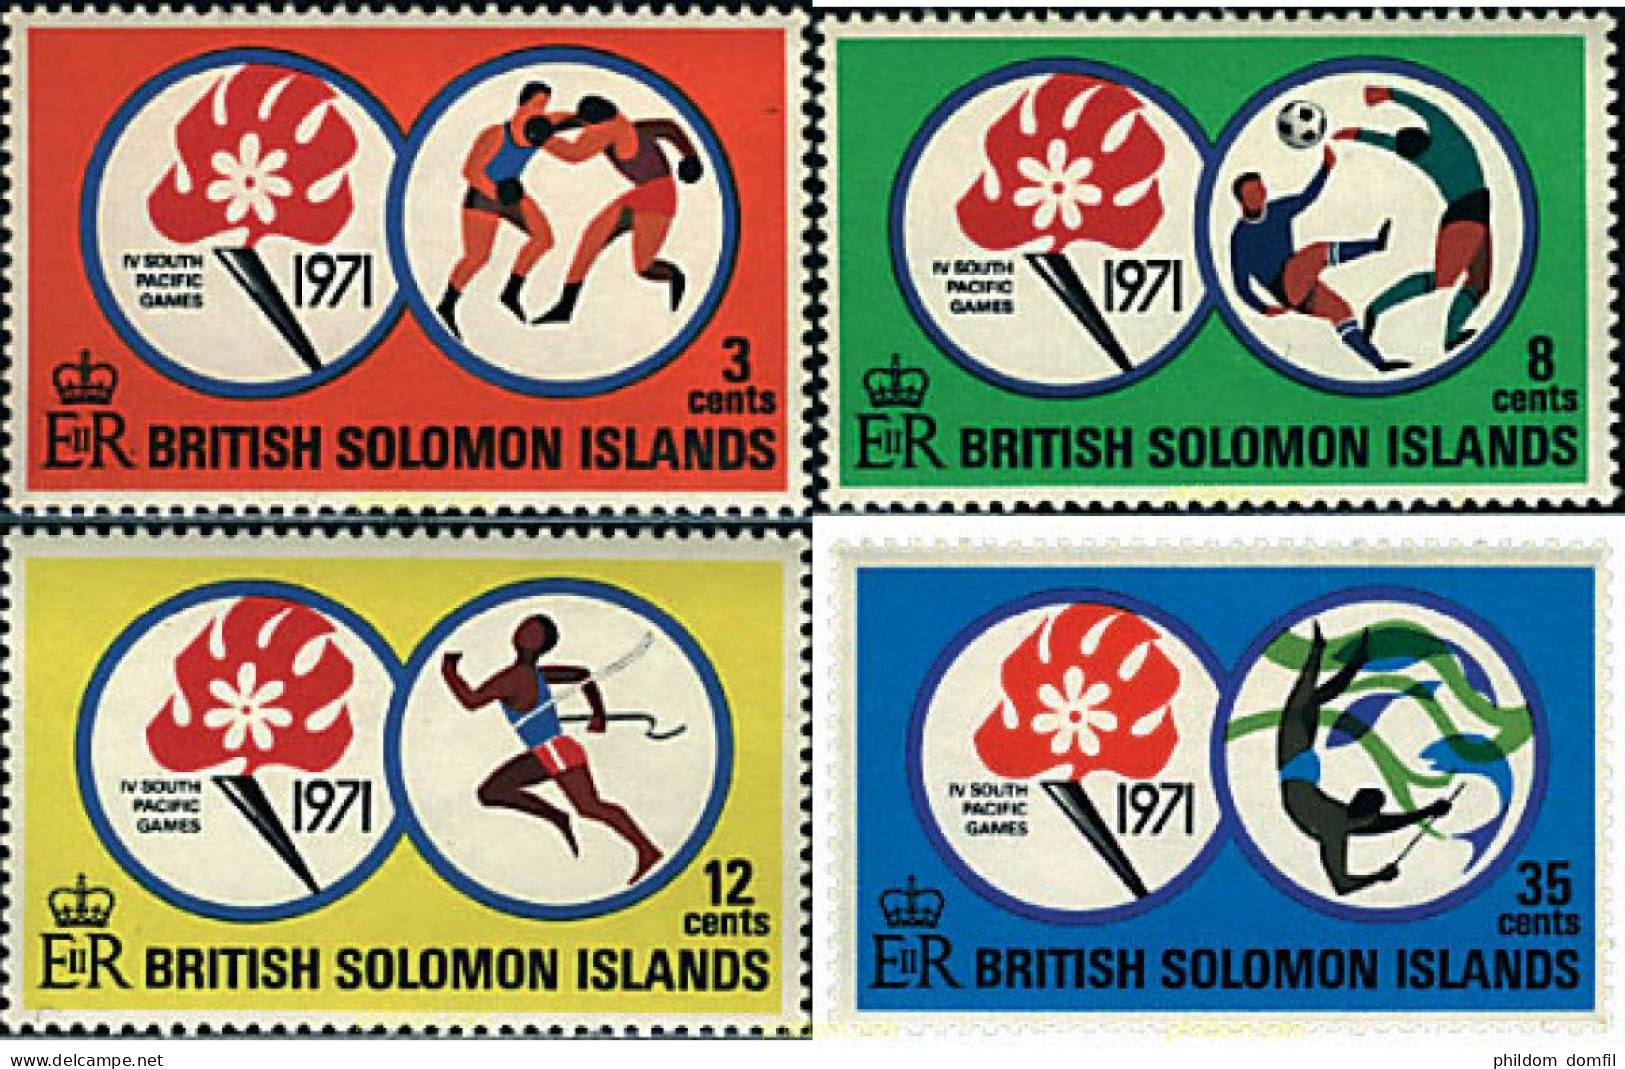 45307 MNH SALOMON 1971 4 JUEGOS DEL PACIFICO SUR - British Solomon Islands (...-1978)